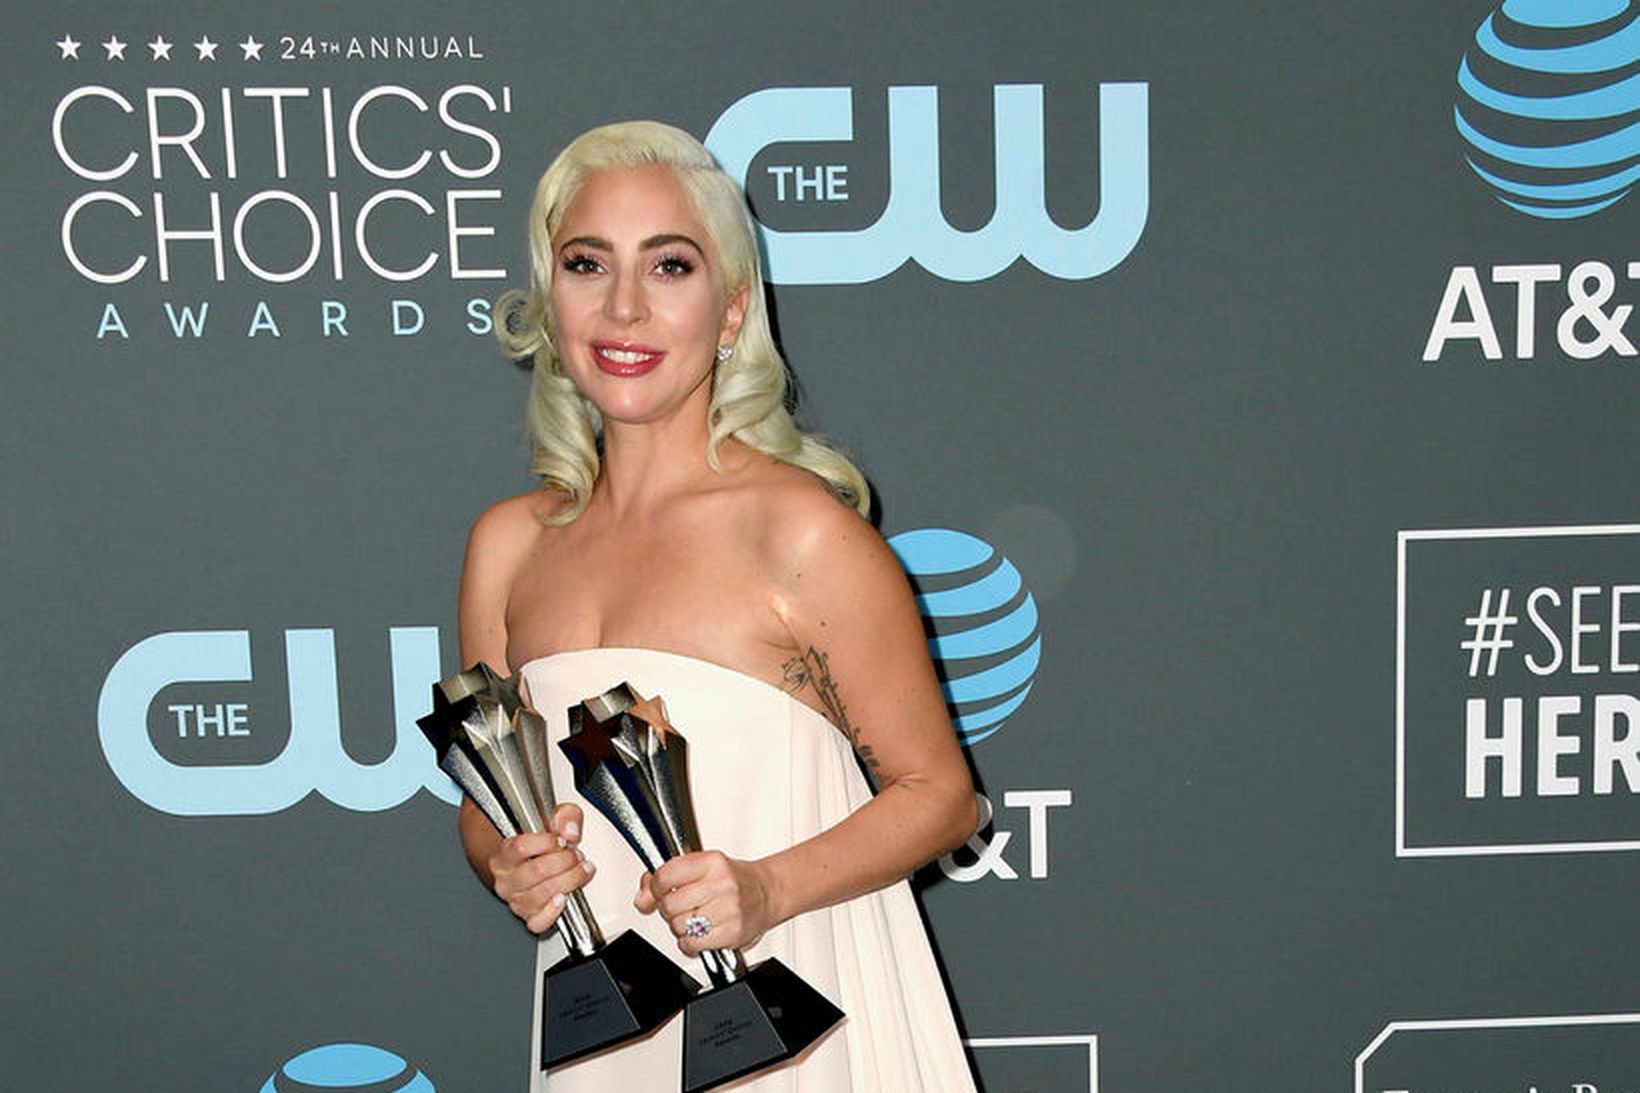 Lady Gaga segir Pence ekki vera góða kristna fyrirmynd.